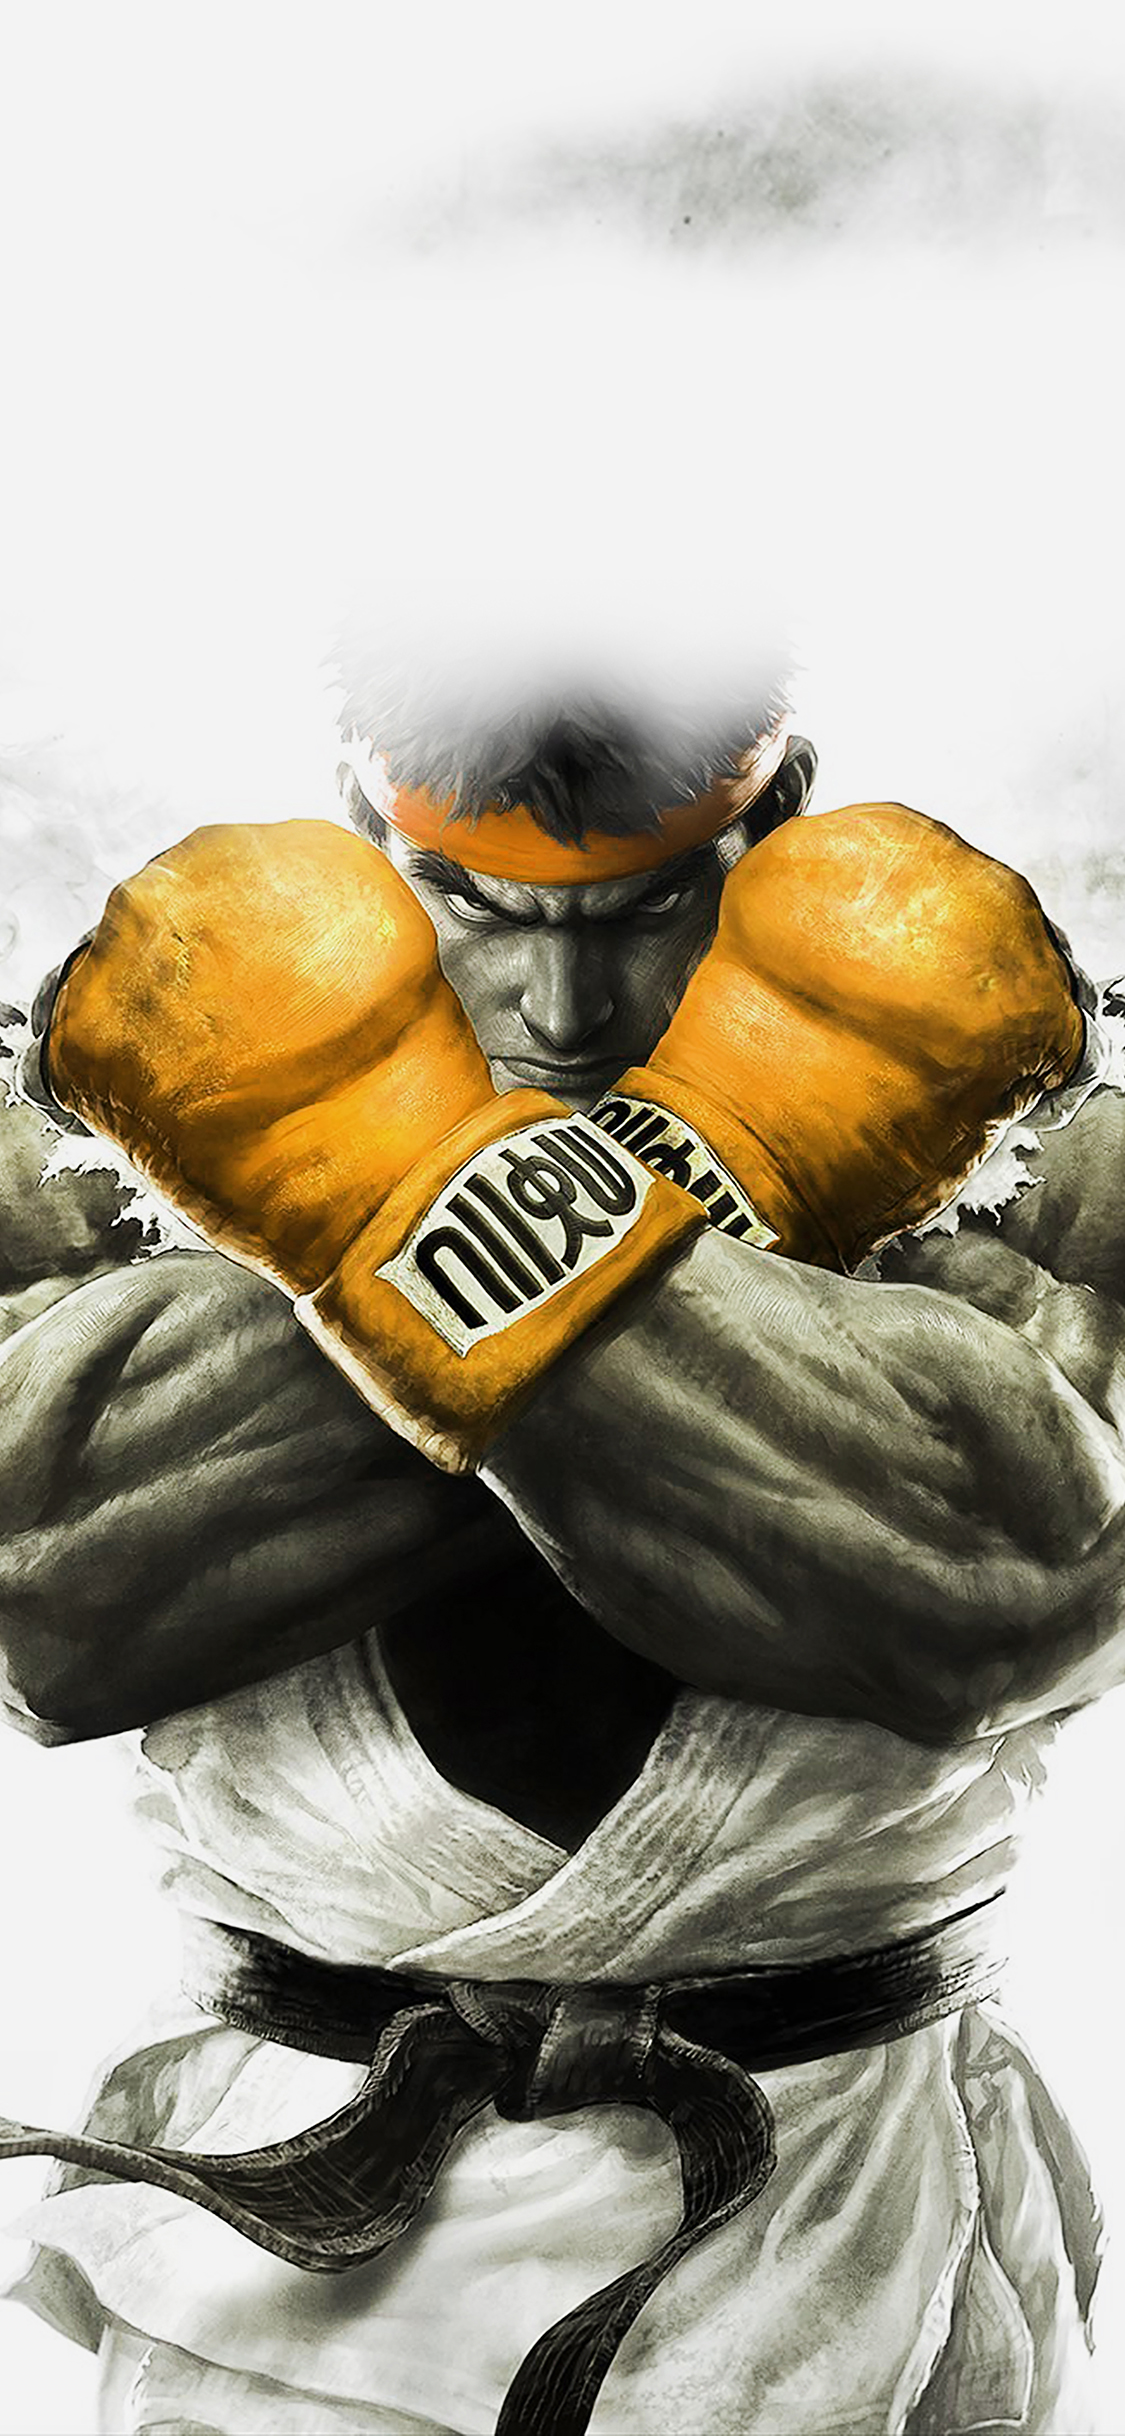 street fighter fond d'écran iphone,gant de boxe,boxe,sports de combat saisissants,équipement sportif,illustration